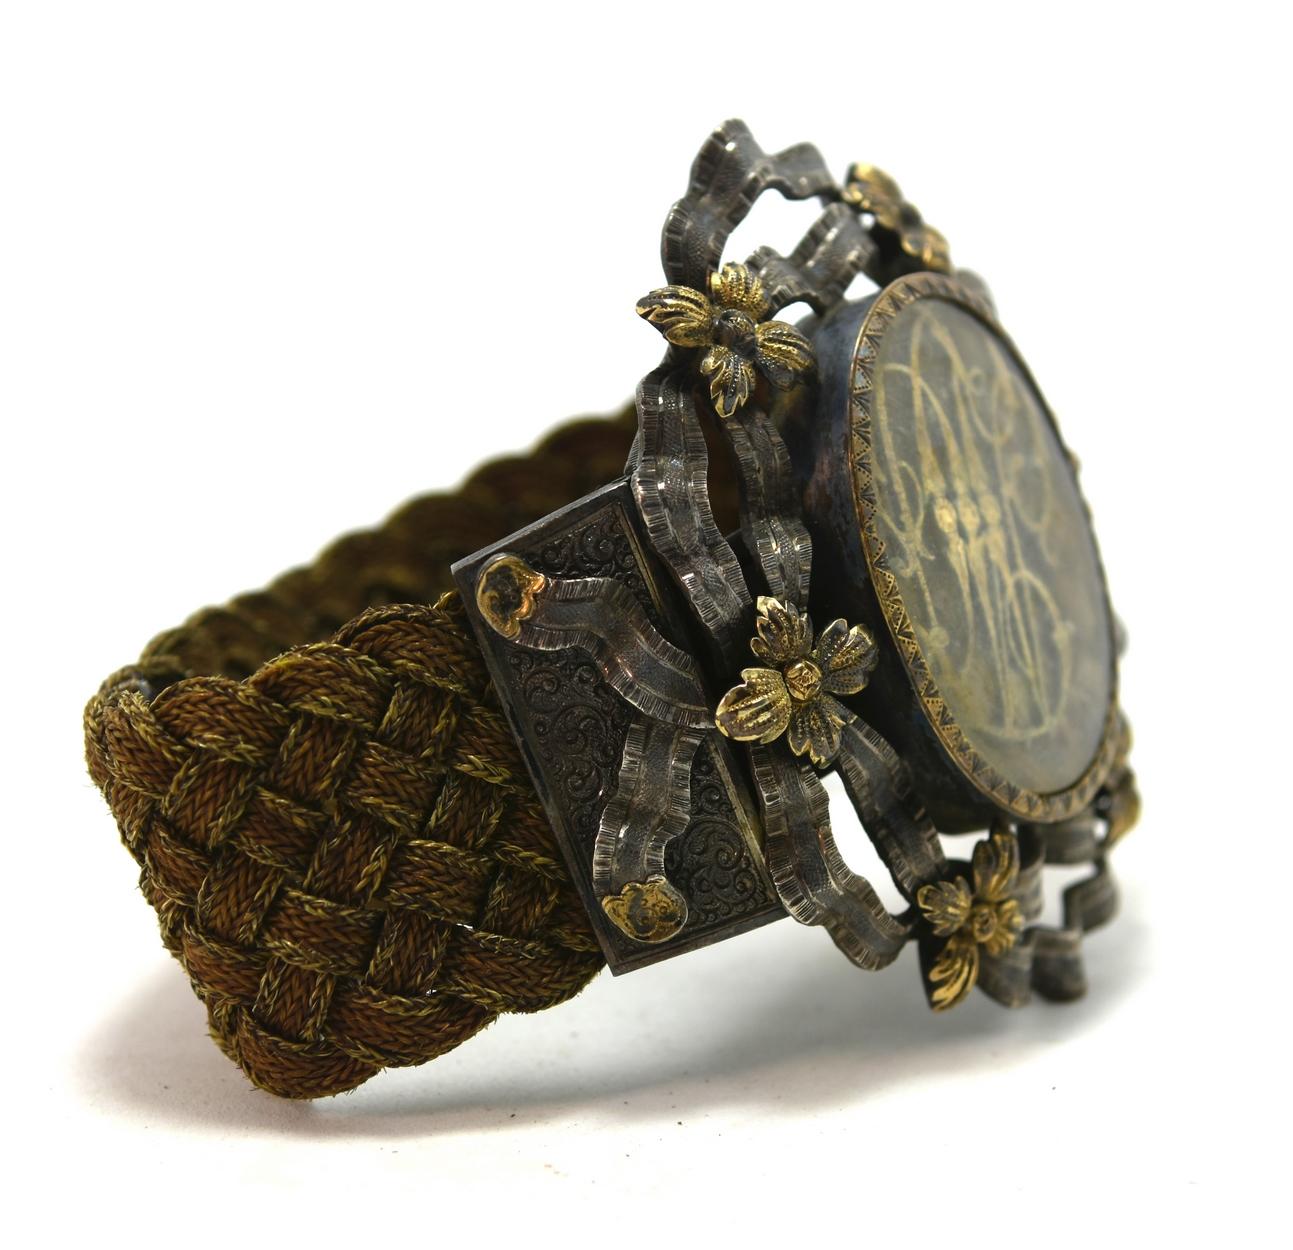 bracelet en argent et vermeil du 19e siècle avec des initiales en or décorées de fleurs et de rubans en or. Bracelet pour cheveux tressés.